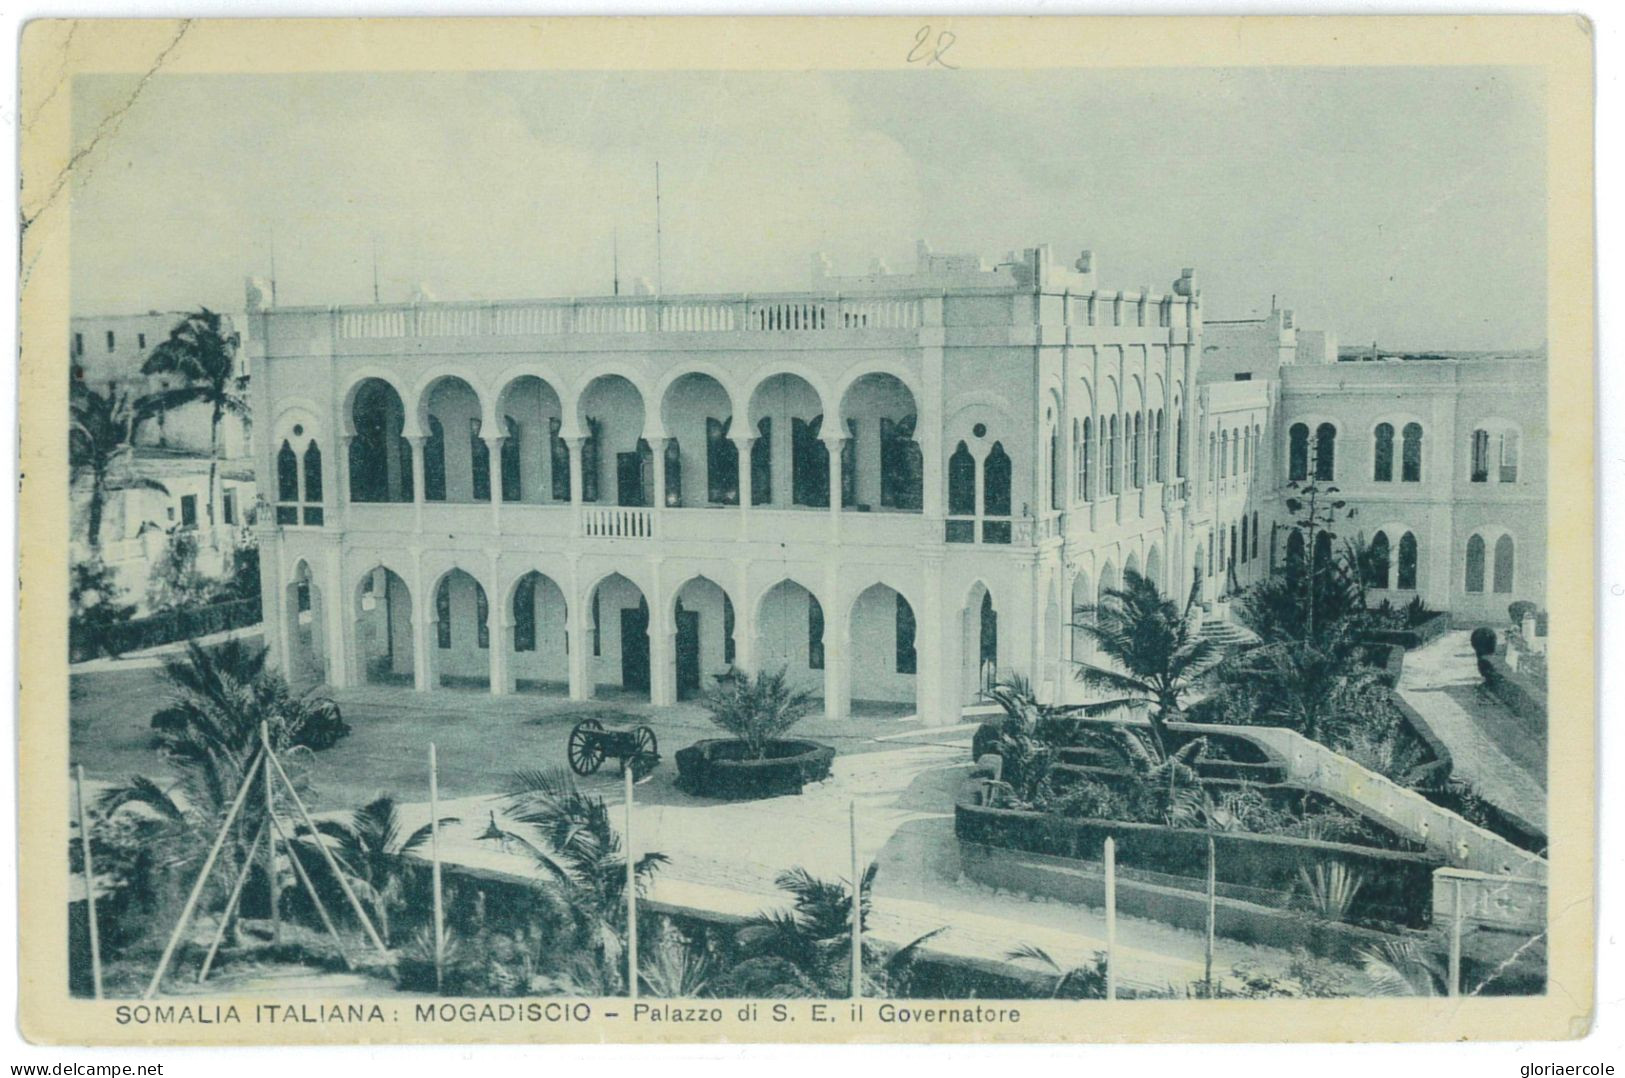 P2542 - ITALIA BA SOMALIA, DAL ANNULLO SI LEGGE, 30.12.1950 (ÙLTIMO GIORNO DI VALIDITÀ) - Eritrea